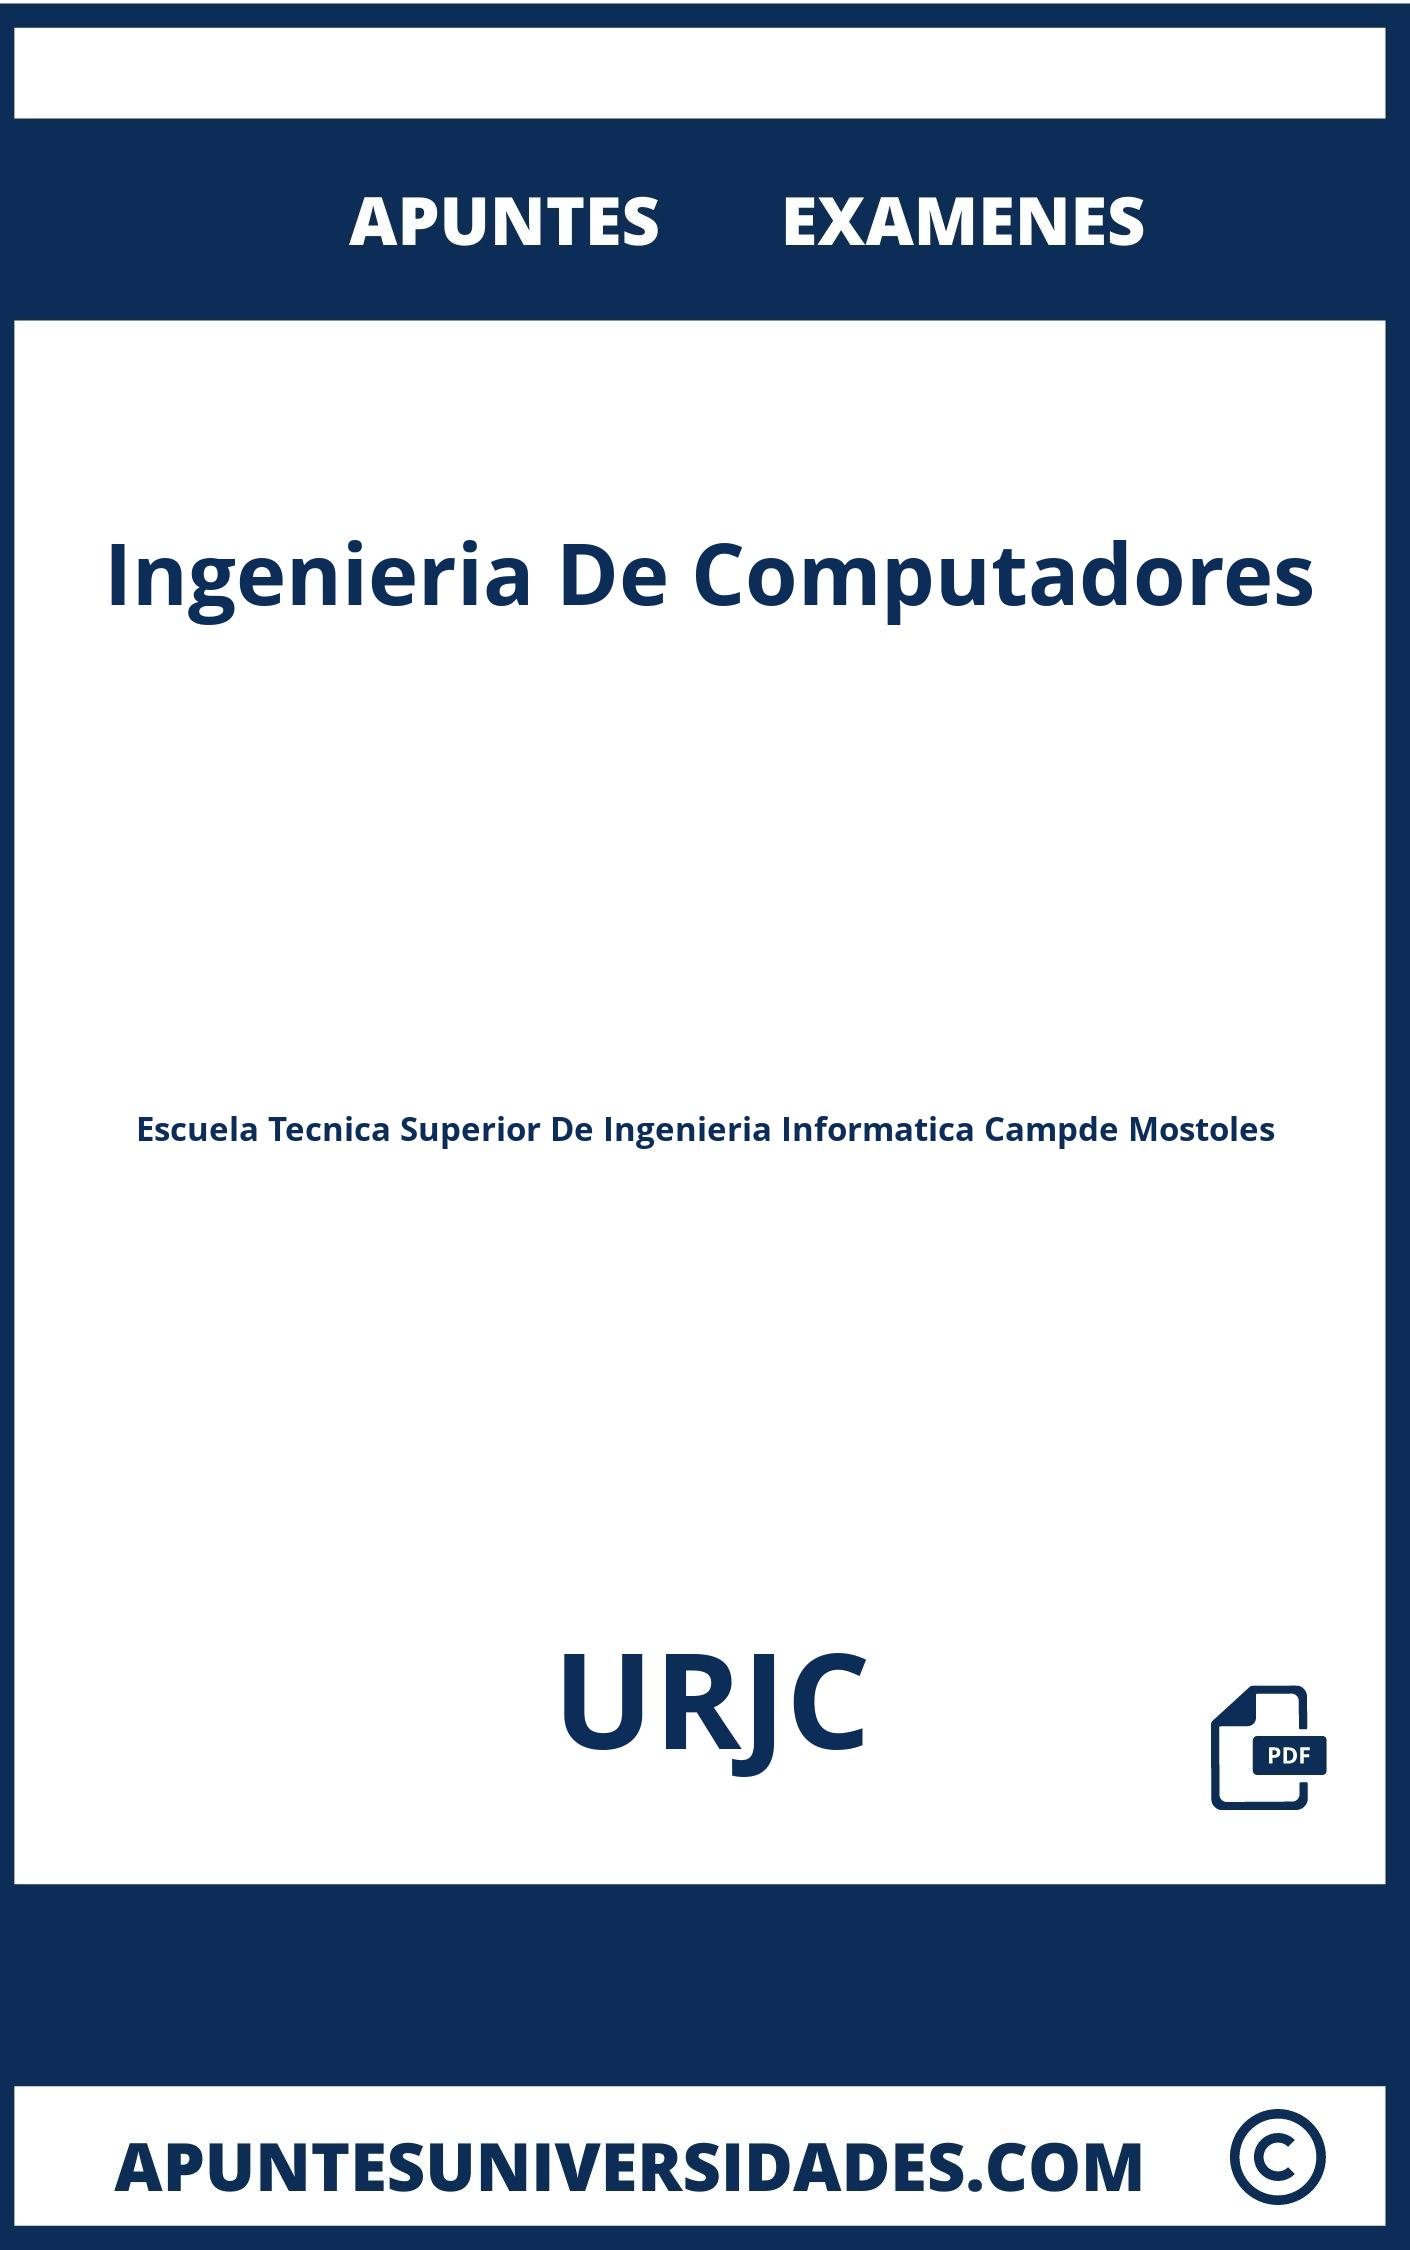 Apuntes y Examenes Ingenieria De Computadores URJC